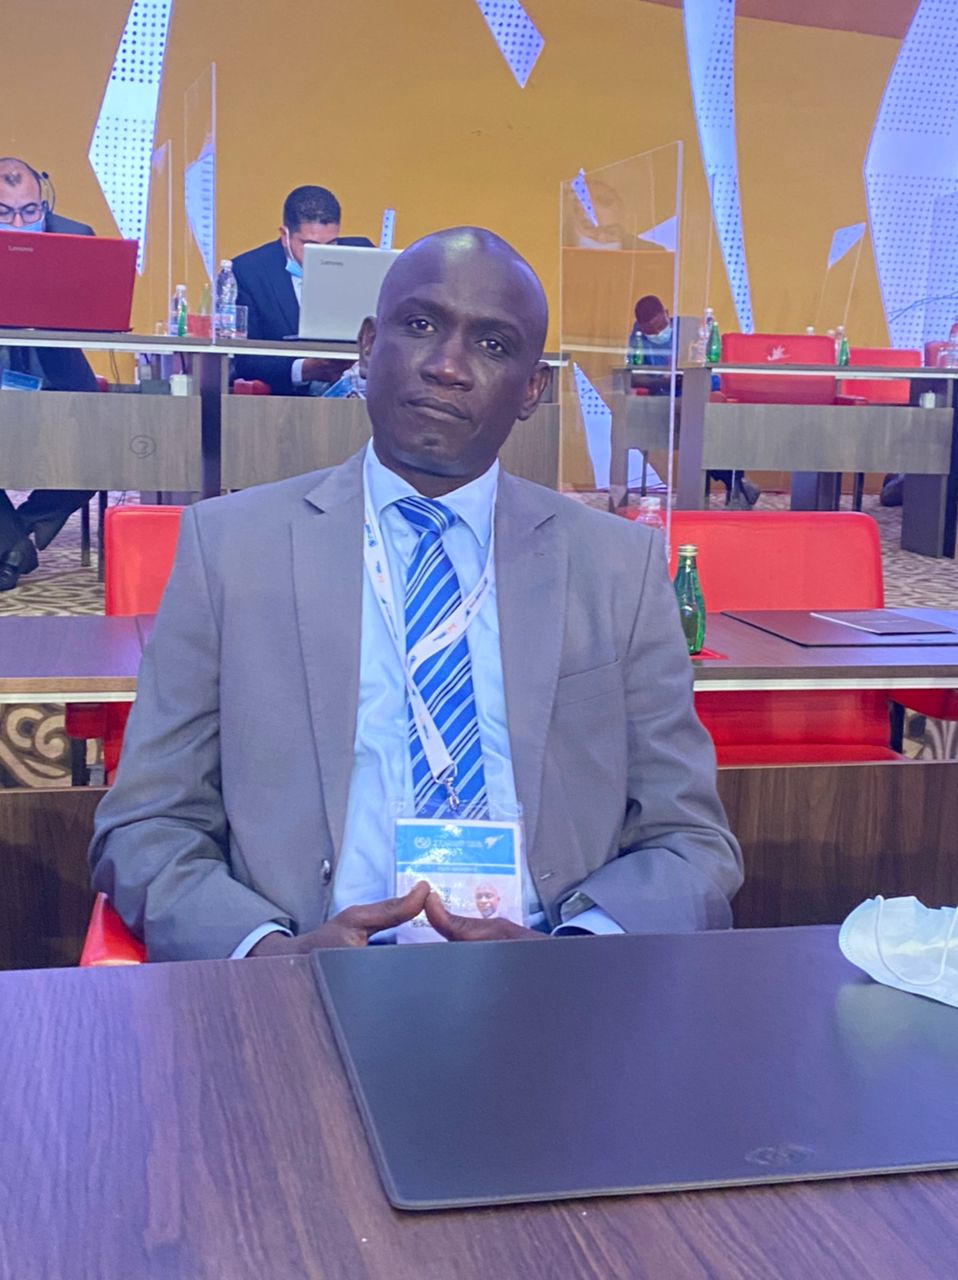 Secteur postal ouest-africain: Le Sénégal et l’ARTP aux commandes du Secrétariat exécutif de la CEPEAO